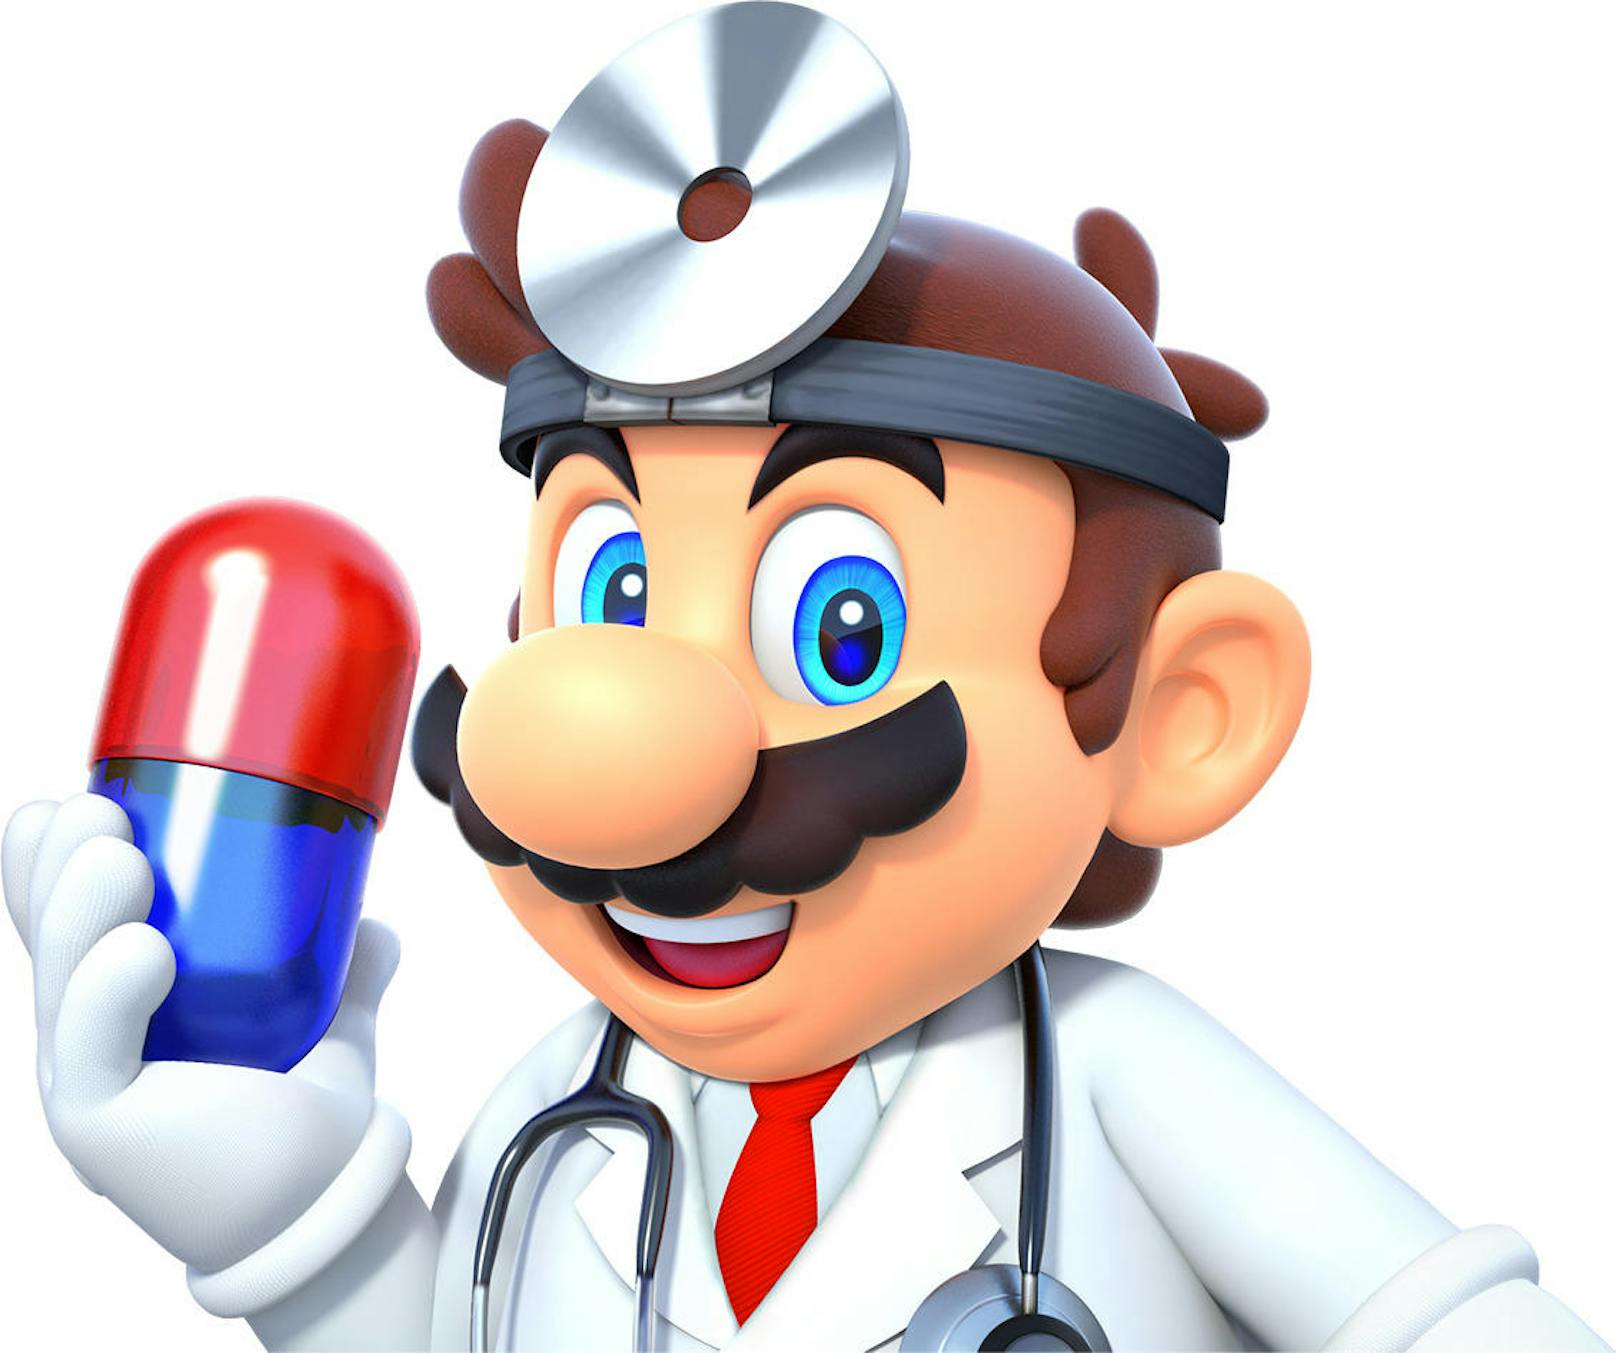 Puzzeln bis der Arzt kommt: Dr. Mario World ist ab sofort erhältlich. Das neueste mobile Spiel von Nintendo lässt sich ab heute kostenlos für alle unterstützten iOS- und Android-Geräte herunterladen. In dem Puzzle-Spaß bekämpfen Videospiel-Fans allein oder zusammen zudringliche Viren. Dr. Mario und seine Freunde können sie eliminieren, indem sie die verschiedenen Viren jeweils mit gleichfarbigen Kapseln in Berührung bringen. Um einen Level von sämtlichen Viren zu befreien, steht nur eine beschränkte Zahl zweifarbiger Kapseln zur Verfügung. Zum Start des Spiels sind mehr als 200 Level in den unterschiedlichsten Welten von Viren befallen.